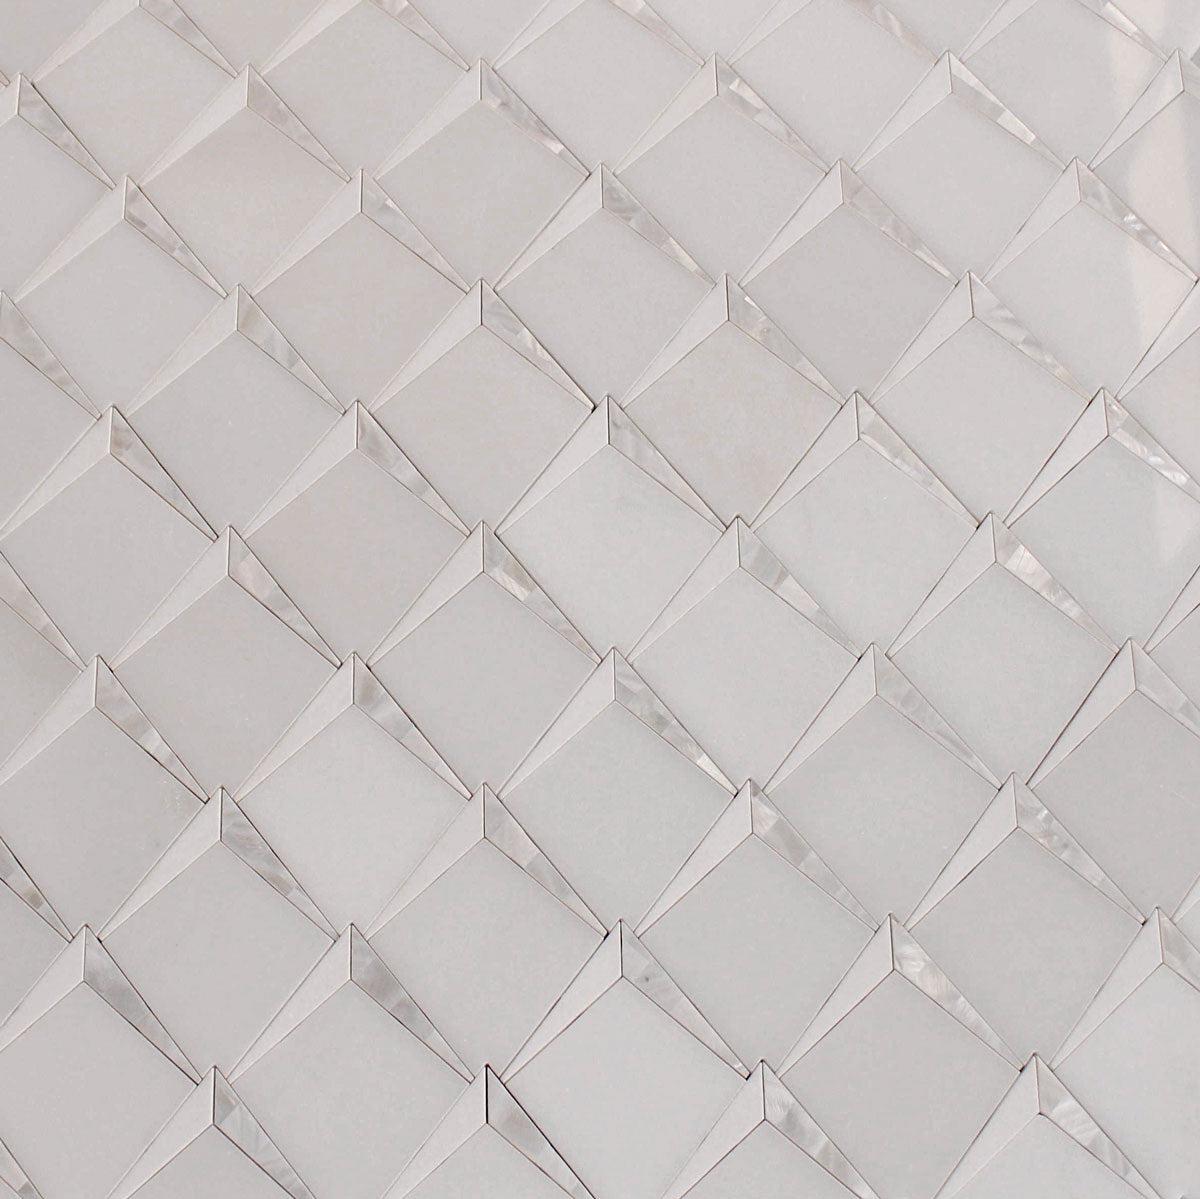 Arrowhead Pearl Marble Mosaic Tile Sheets